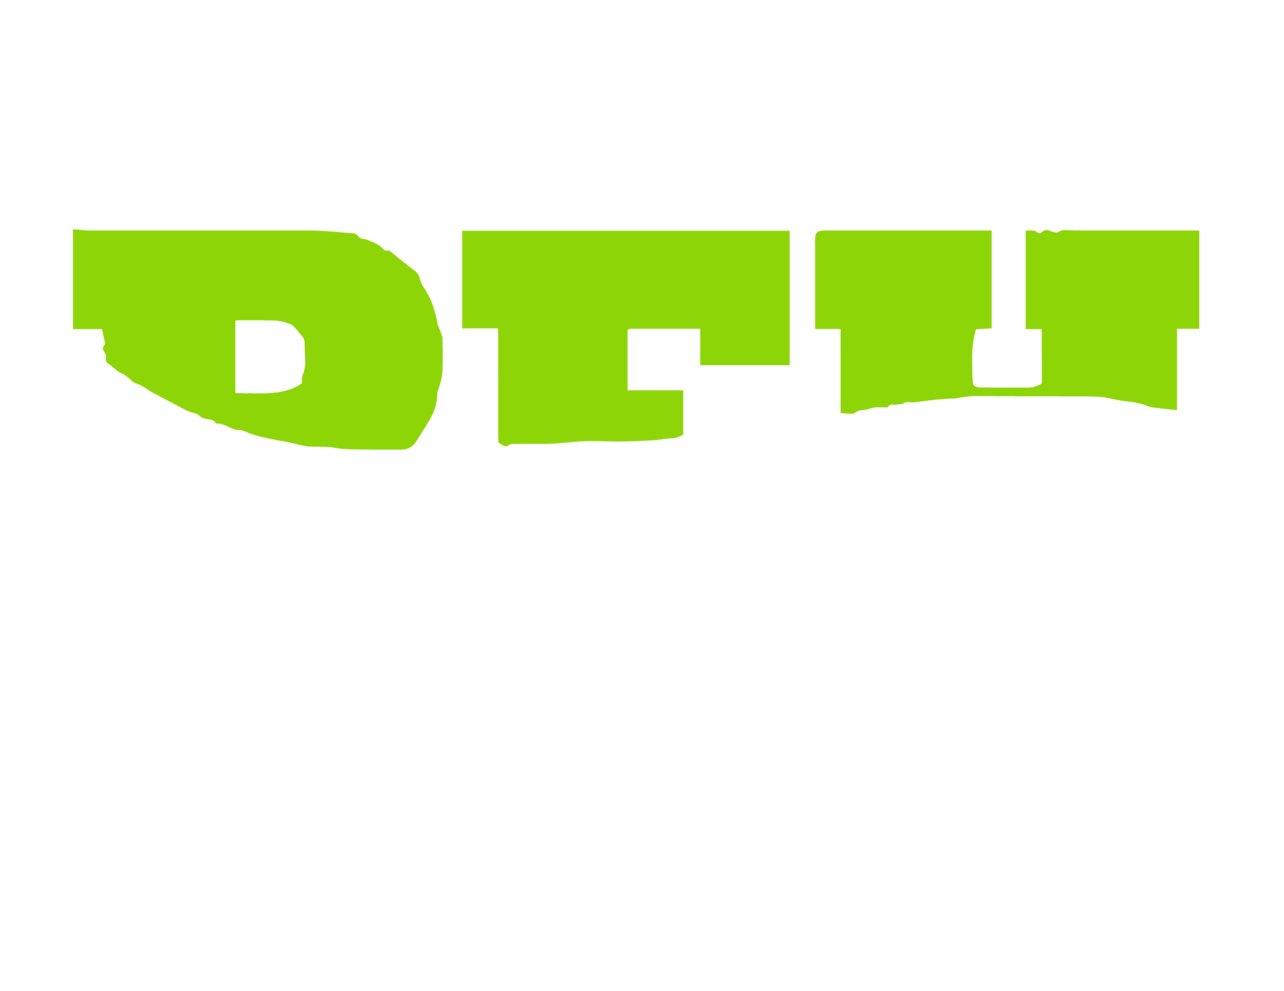 Potomac Field Hockey